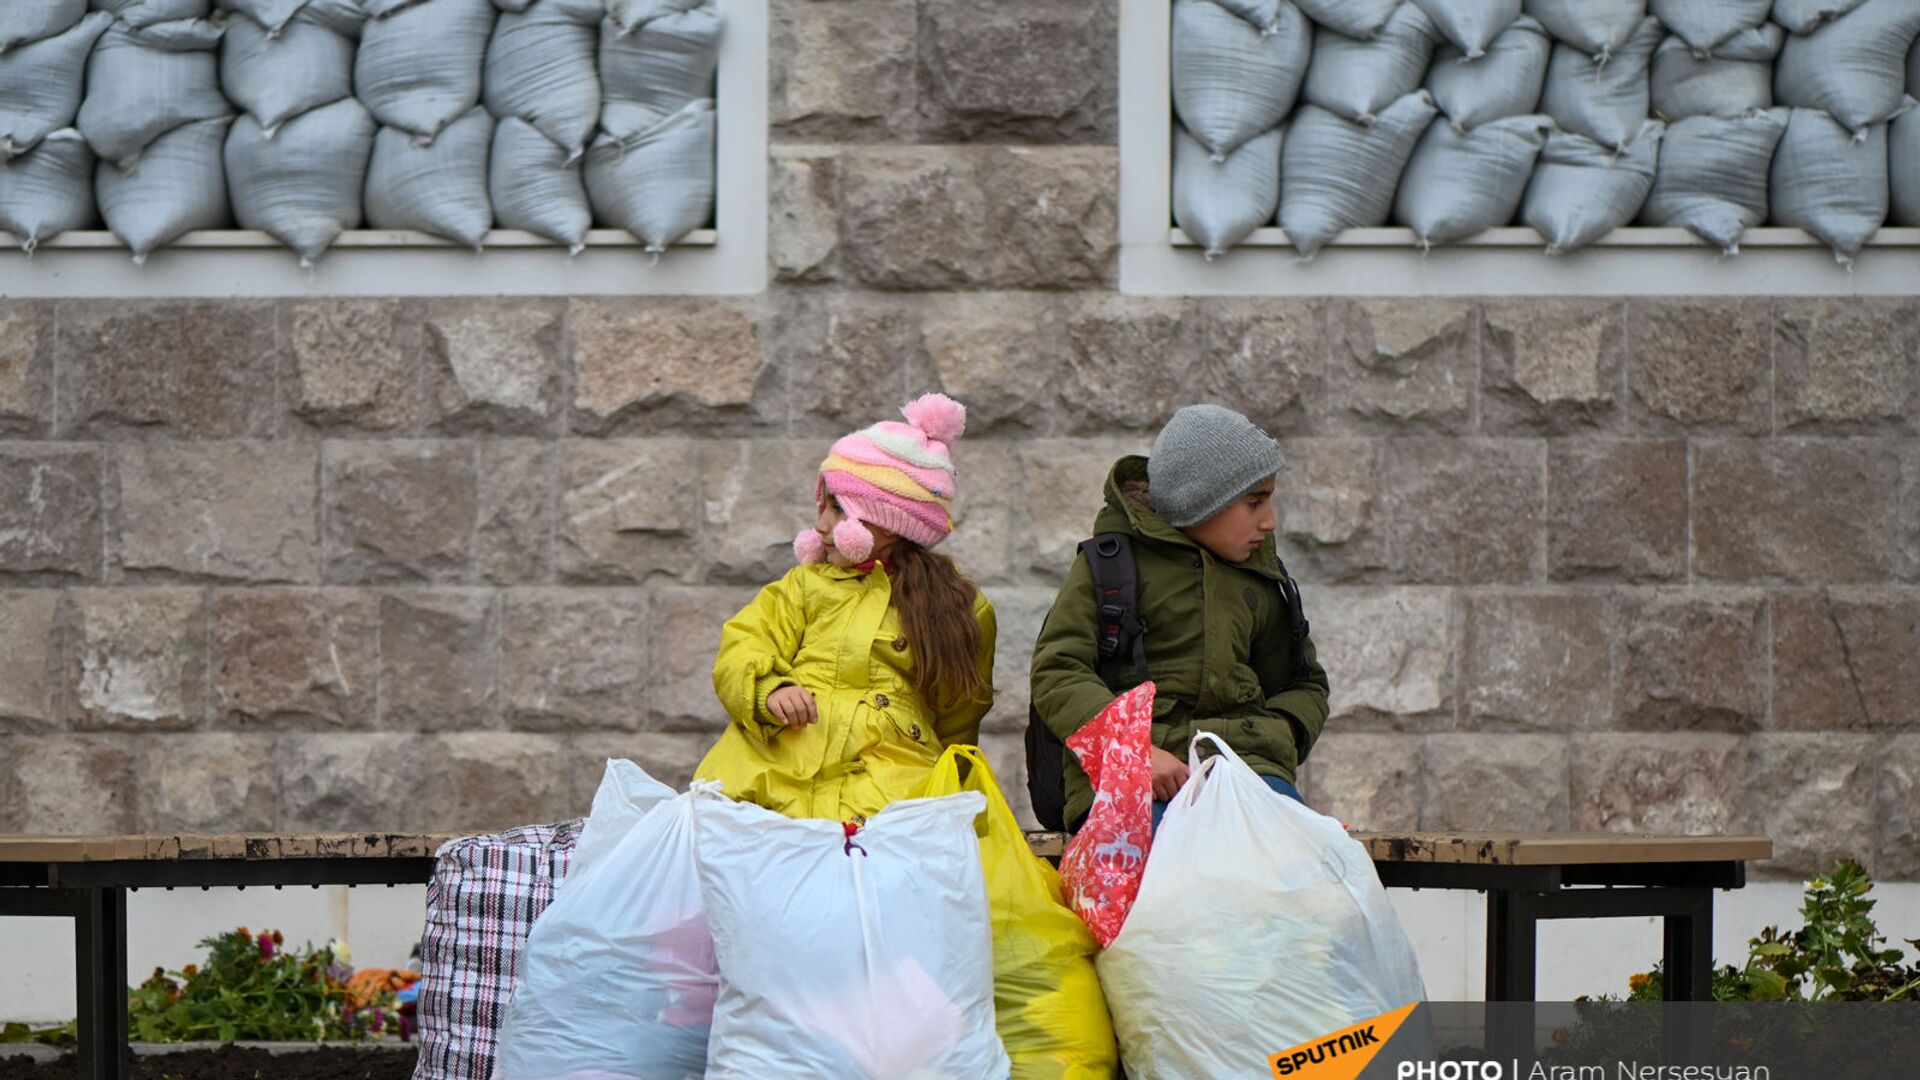 Дети из села Кирсаван ждут маму на площади в Степанакерте - Sputnik Արմենիա, 1920, 29.09.2021